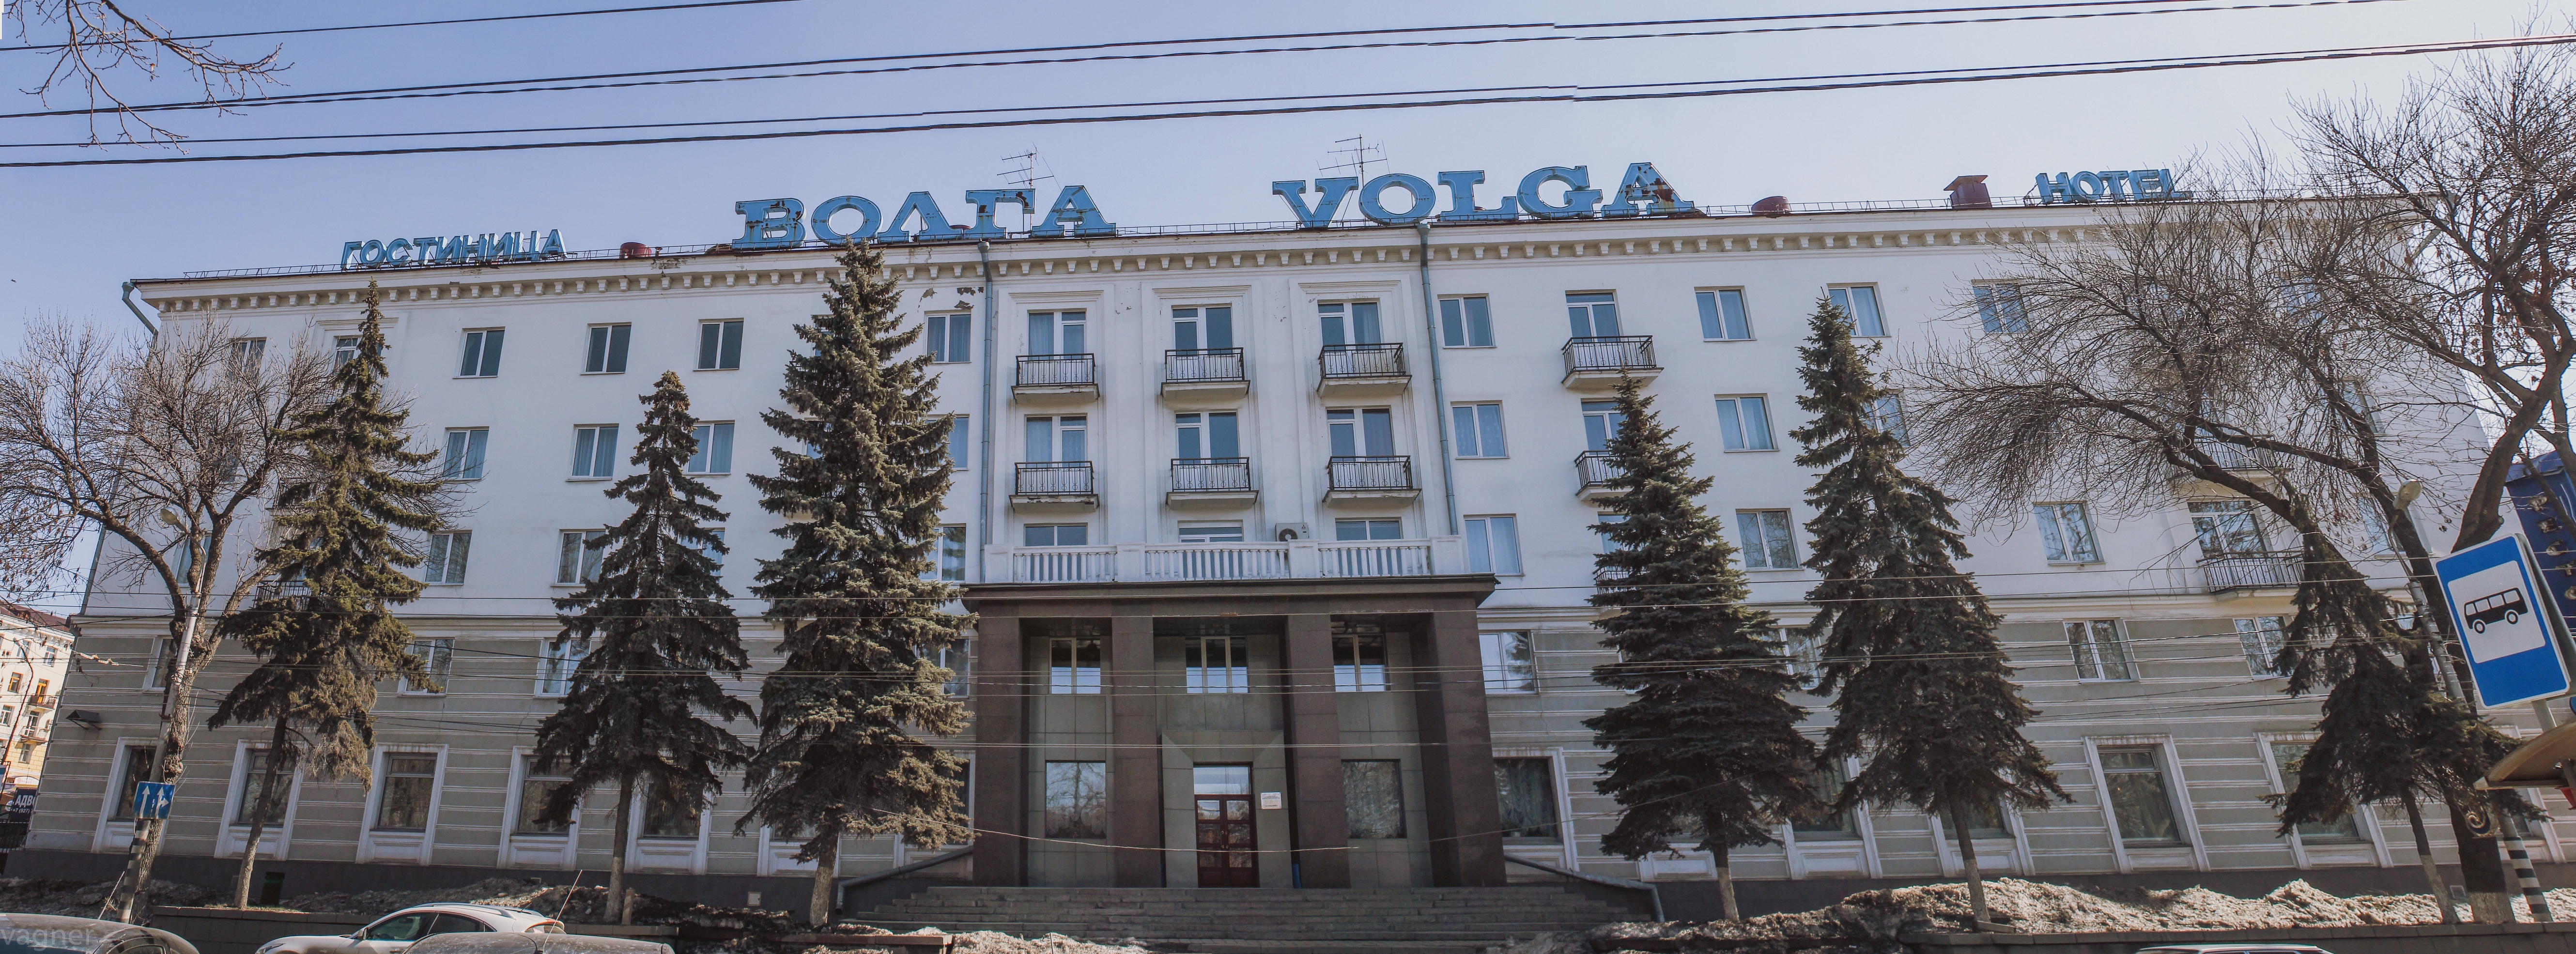 Волга гостиница